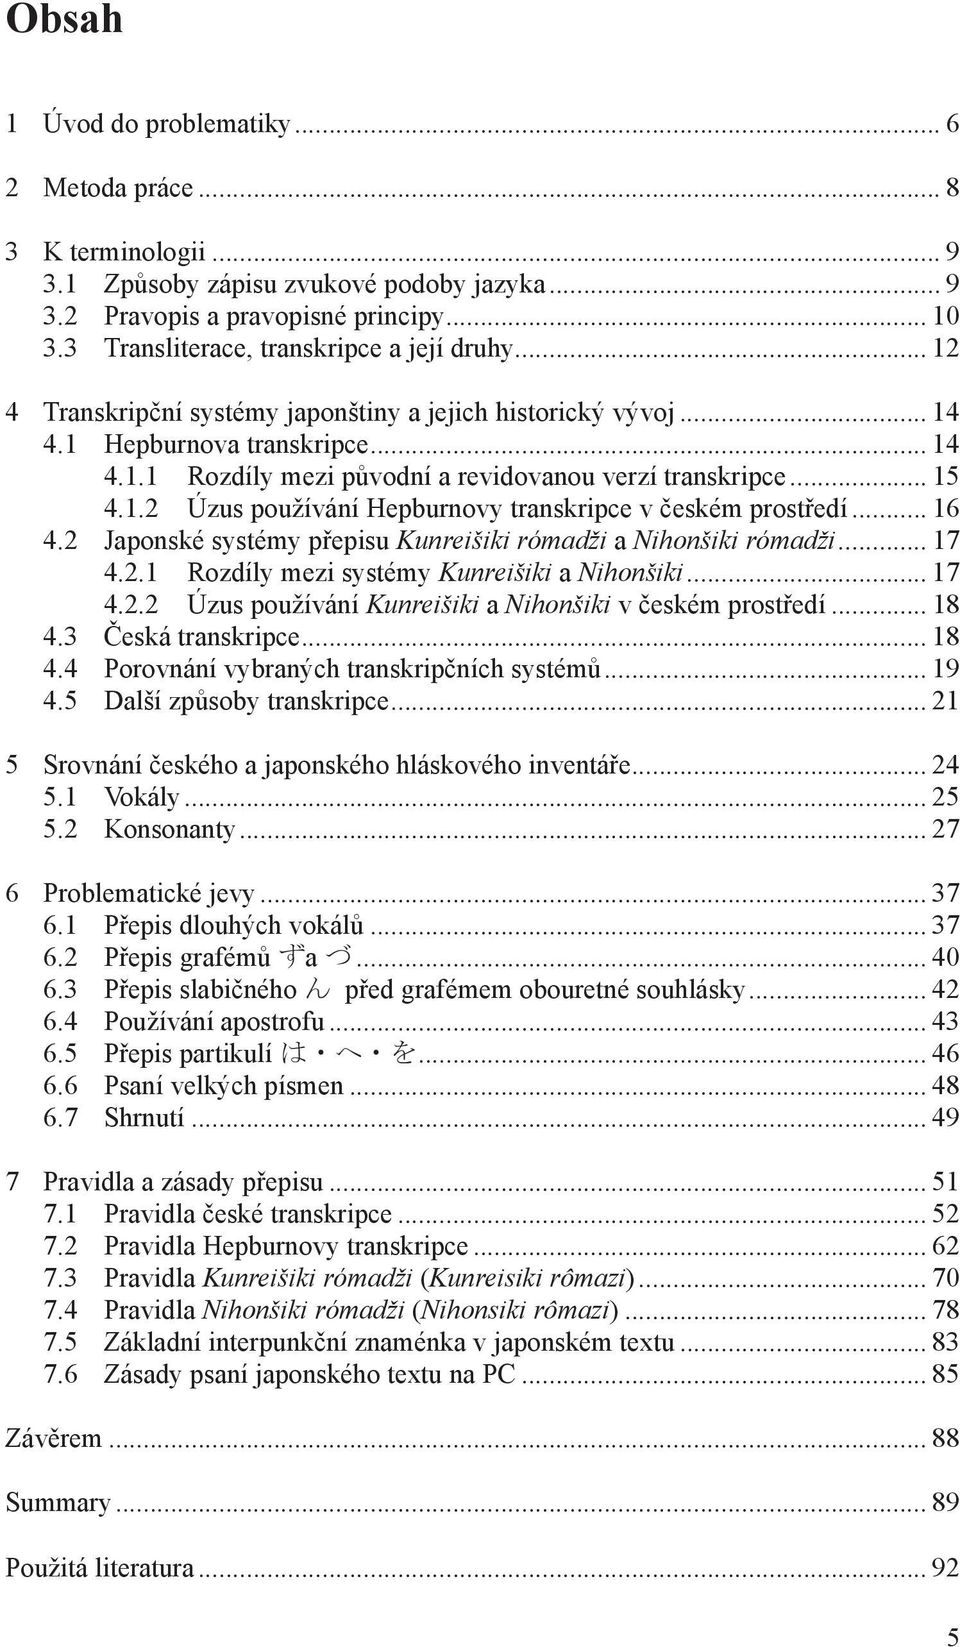 .. 15 4.1.2 Úzus používání Hepburnovy transkripce v českém prostředí... 16 4.2 Japonské systémy přepisu Kunreišiki rómadži a Nihonšiki rómadži... 17 4.2.1 Rozdíly mezi systémy Kunreišiki a Nihonšiki.